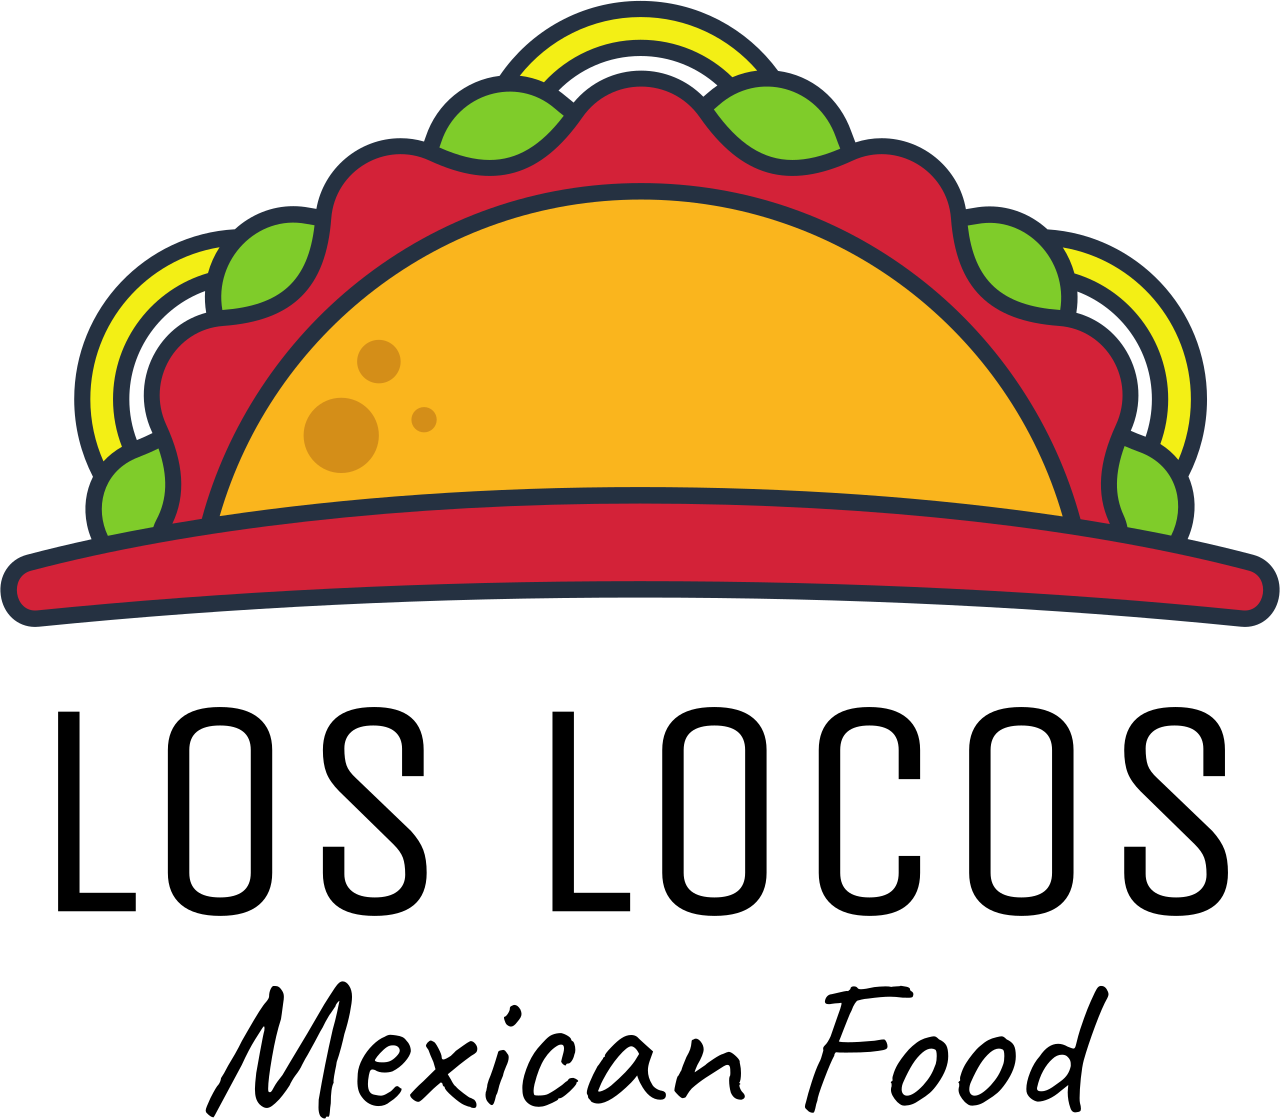 Los Locos's logo